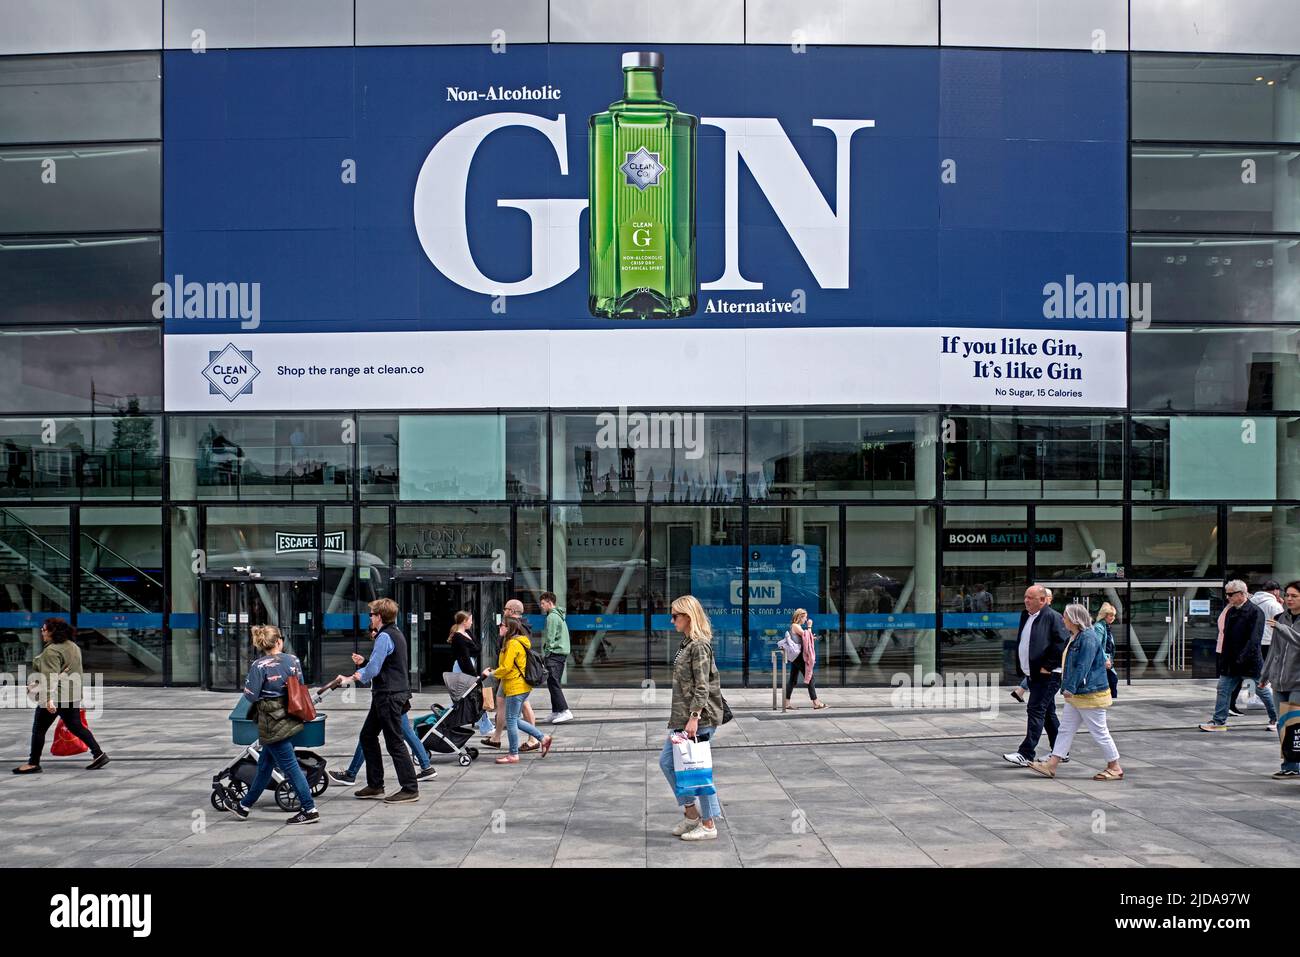 Einkäufer, die an einer Werbung für alkoholfreien Gin im Omni Centre in Edinburgh, Schottland, Großbritannien, vorbei gehen. Stockfoto